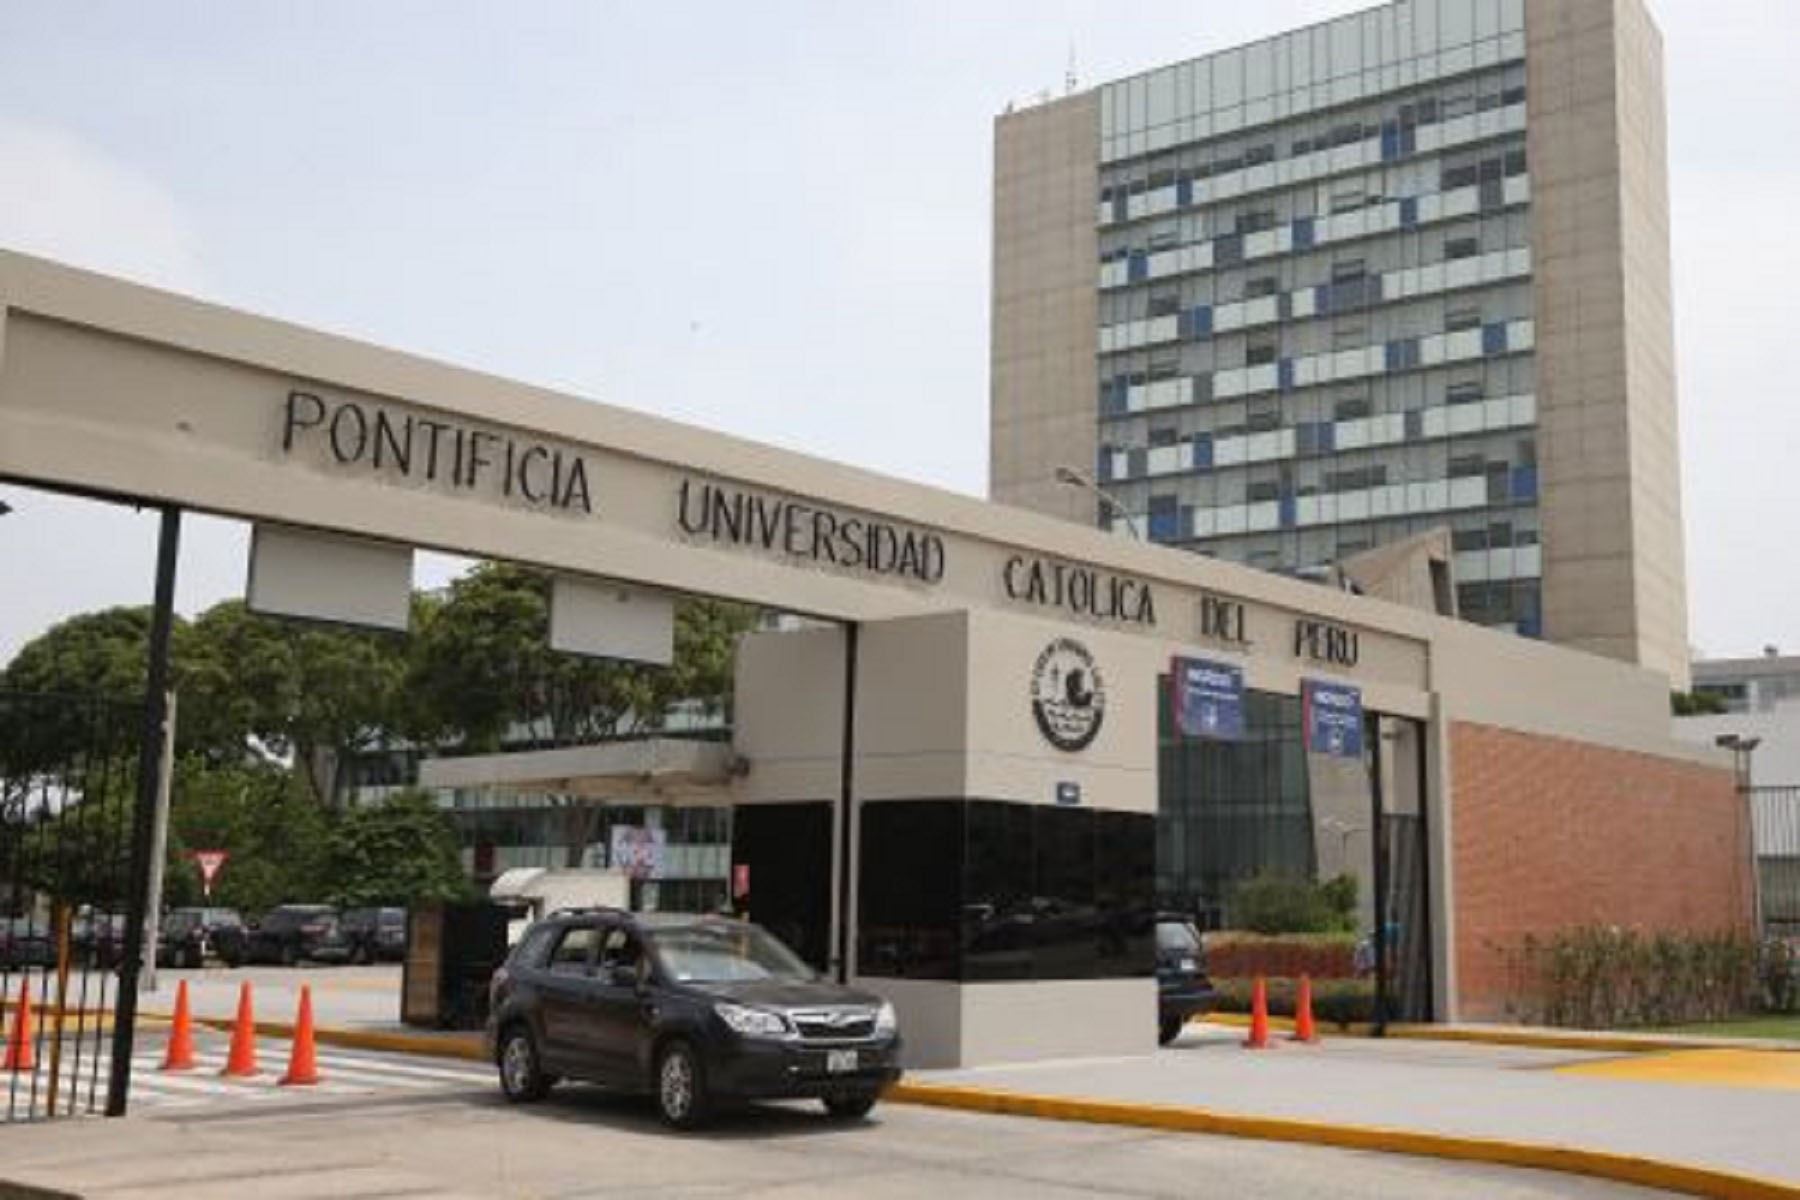 La PUCP está primera entre las 20 universidades peruanas mejor rankeadas de América Latina Ranking QS. Foto: ANDINA/Difusión